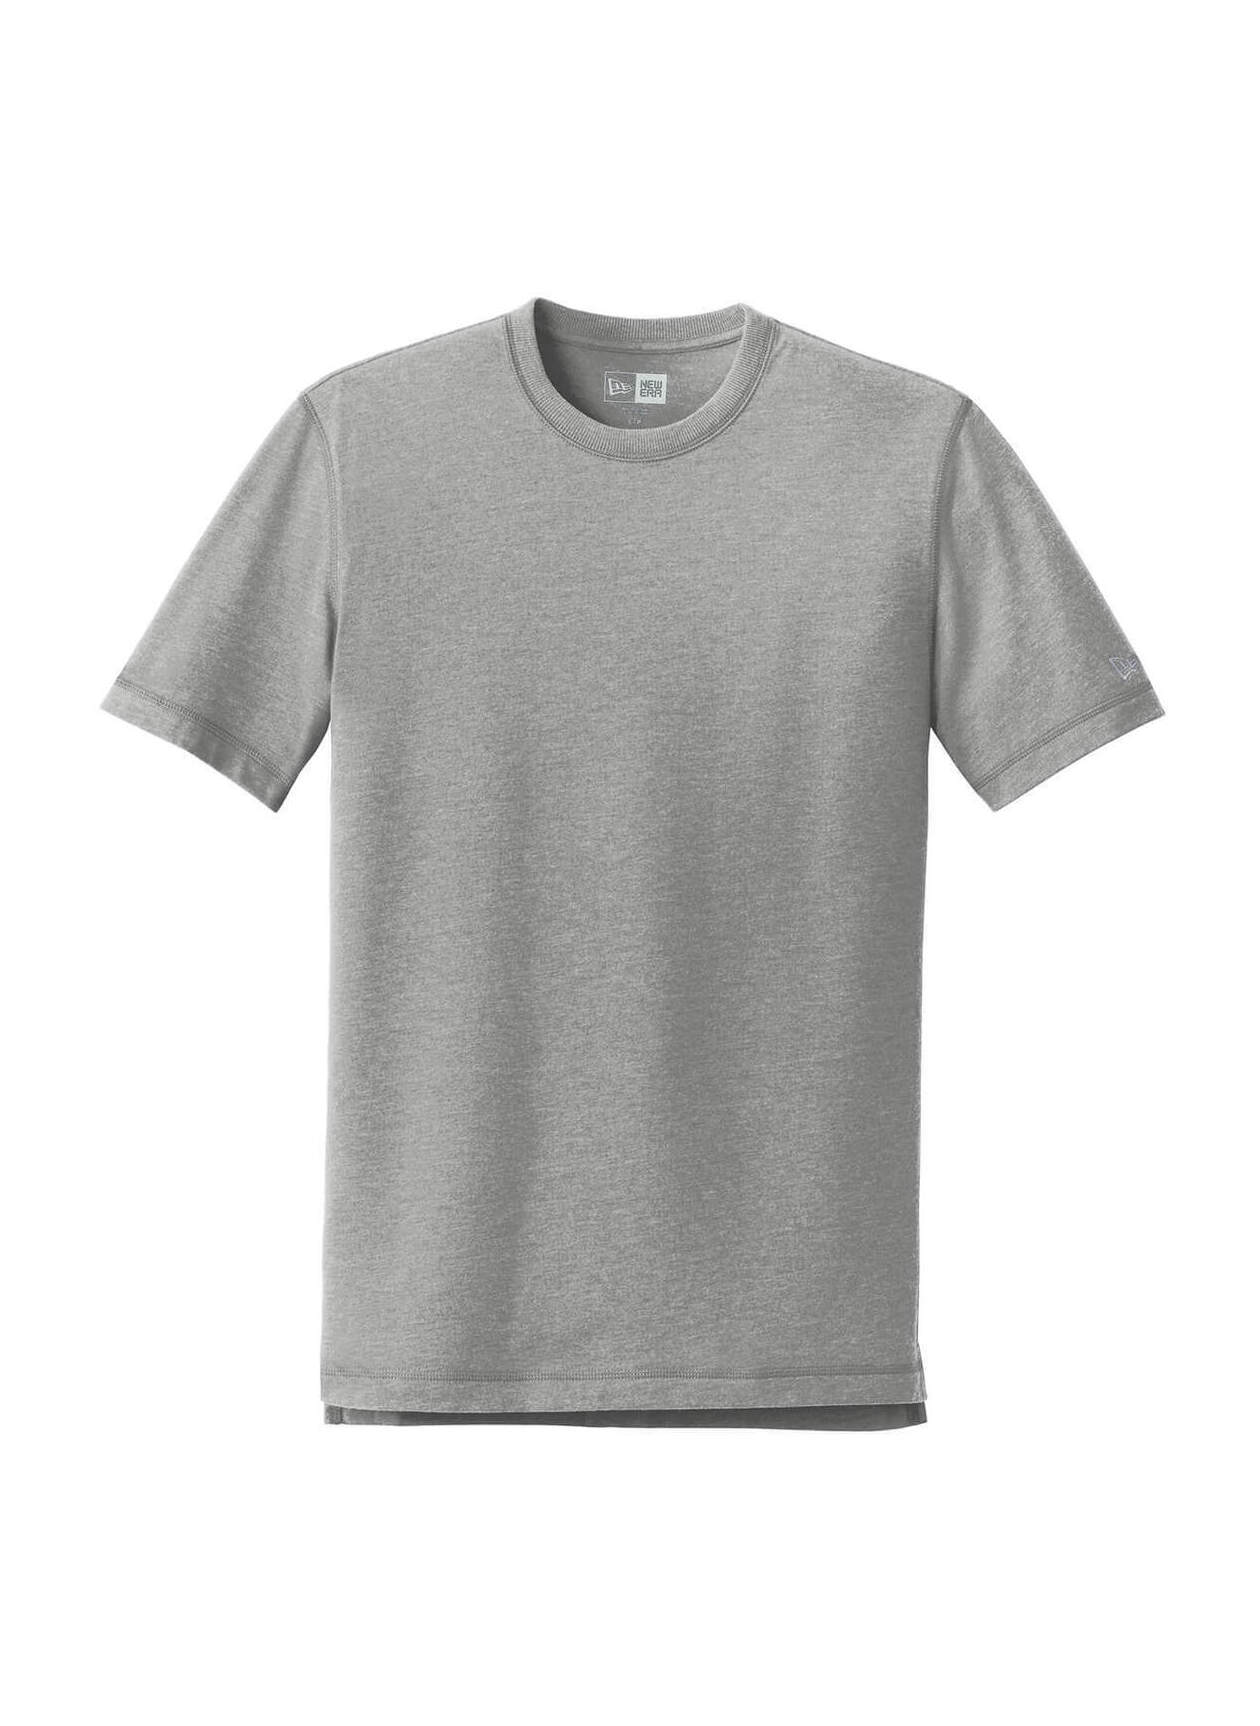 New Era Men's Shadow Grey Heather Sueded Cotton Blend Crew T-Shirt